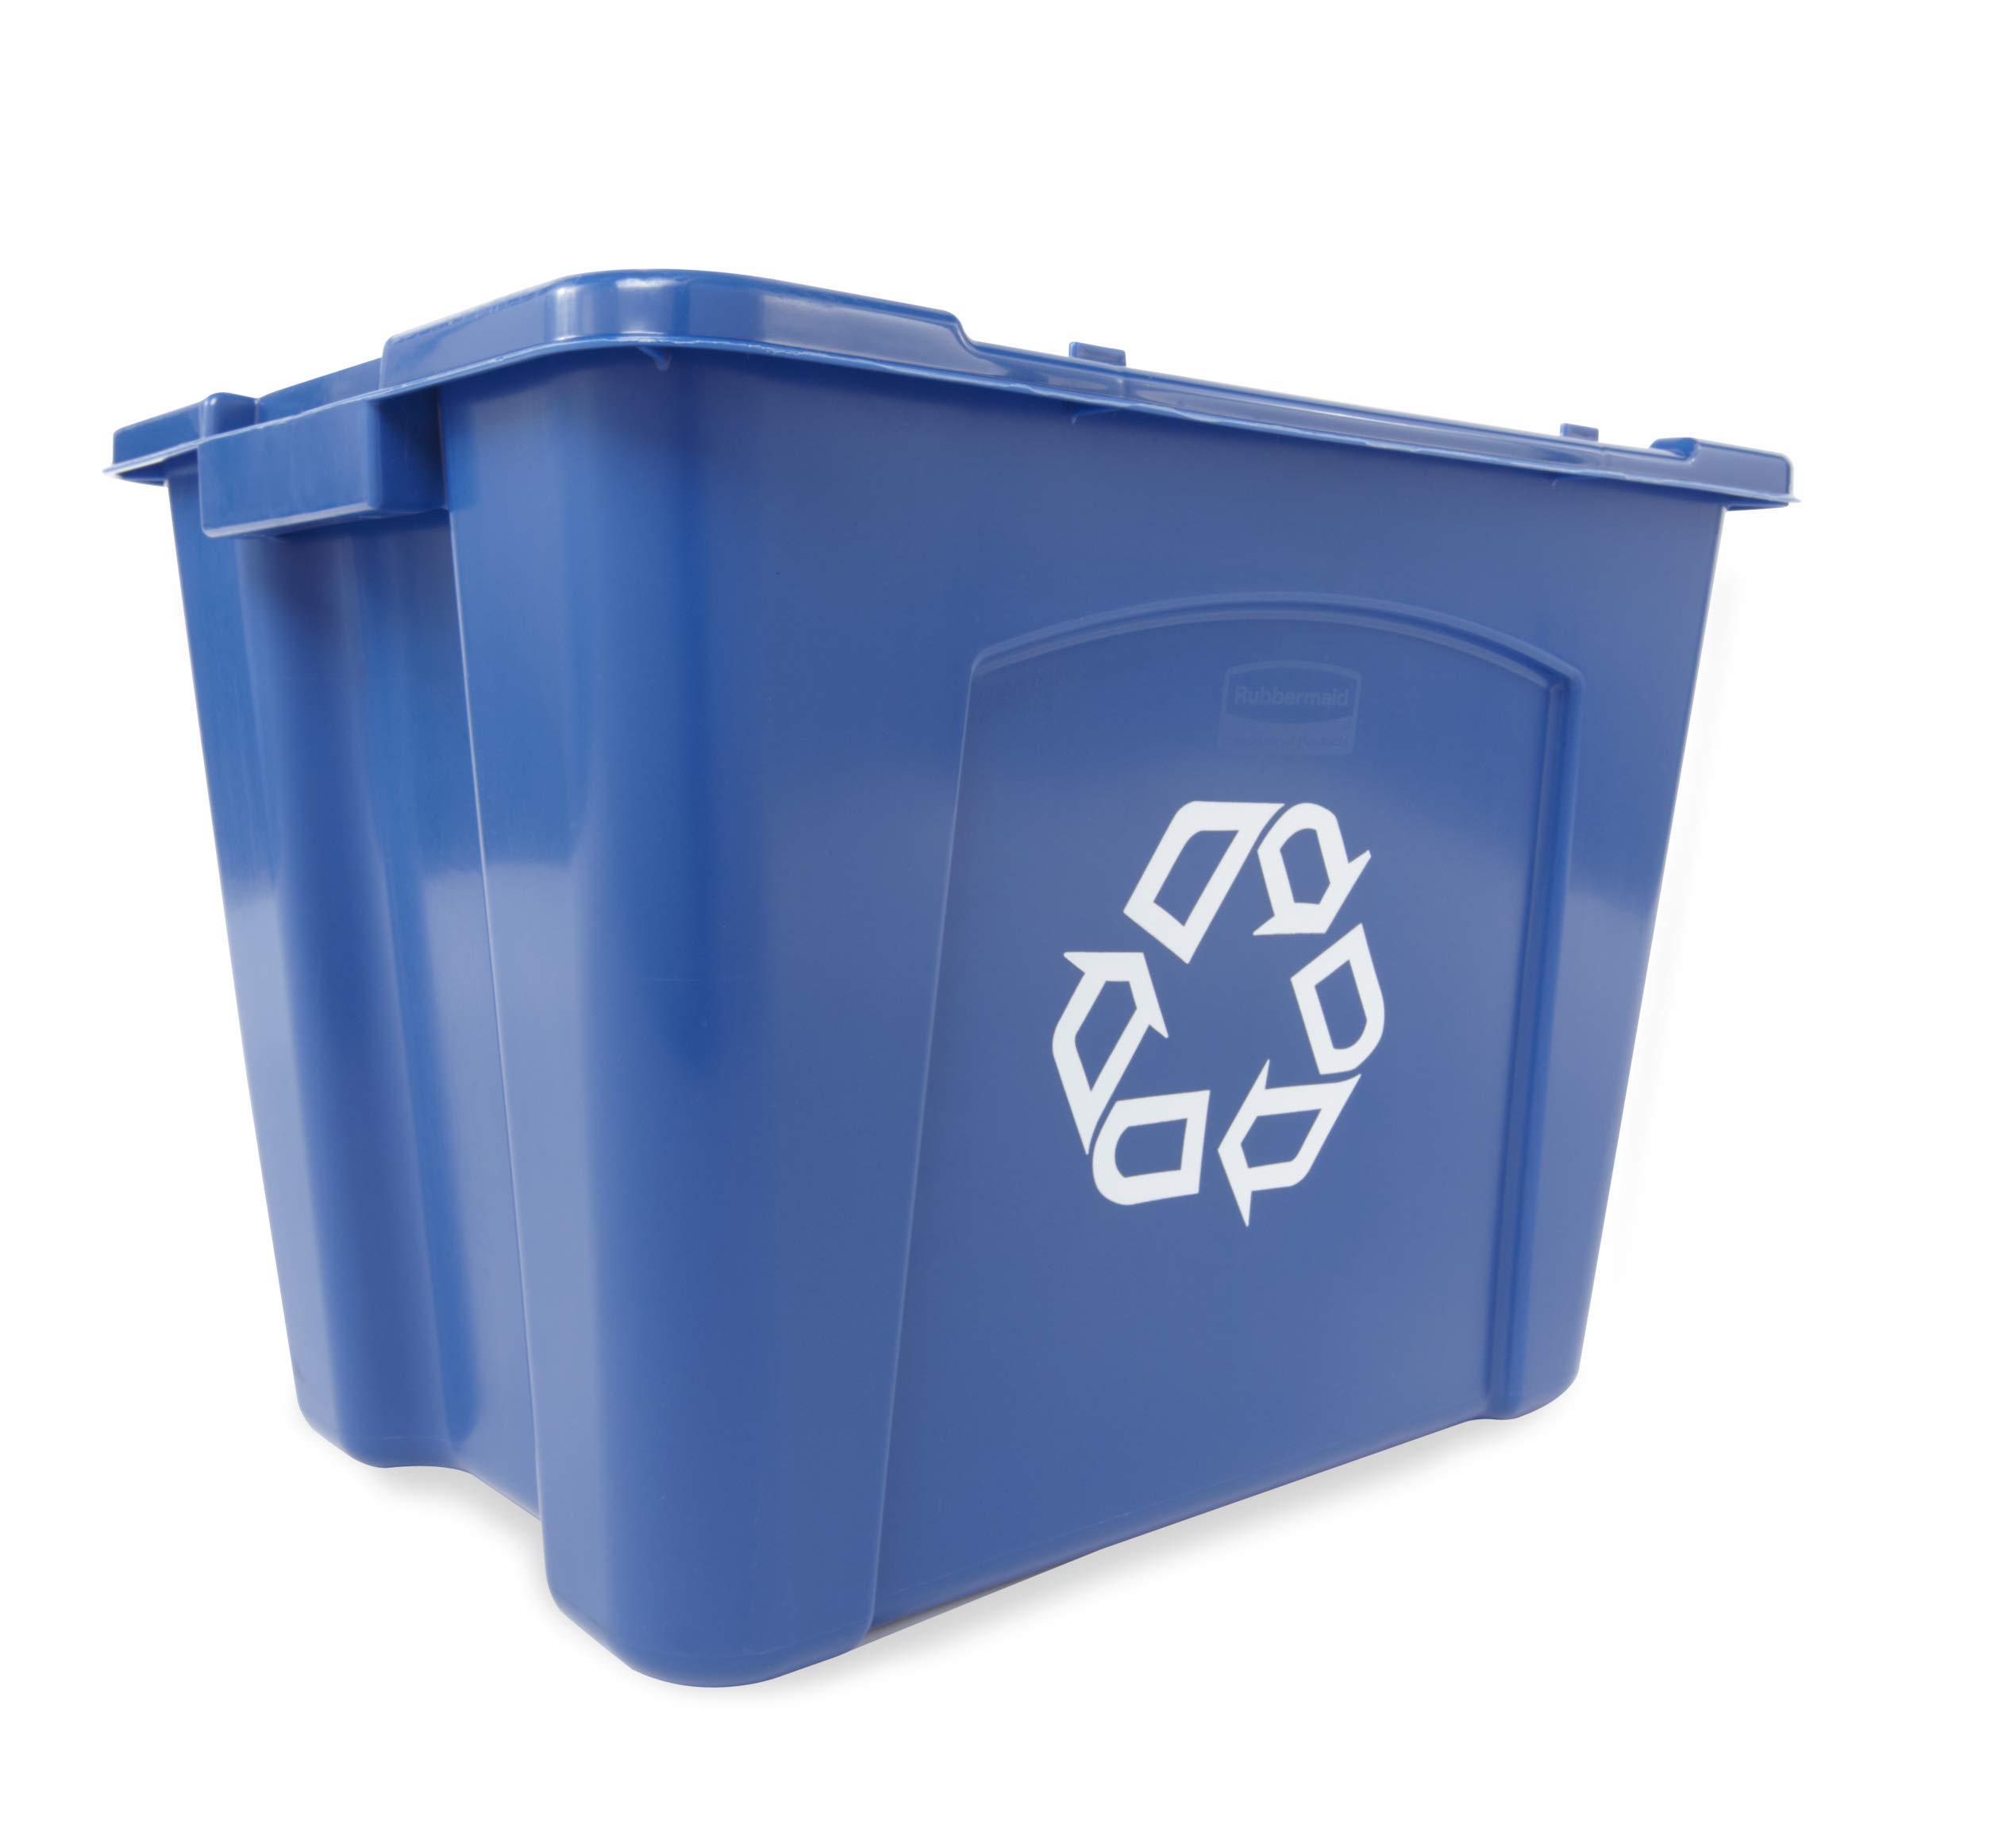 Rubbermaid Stapelbarer Recyclingbehälter für kommerzielle Produkte